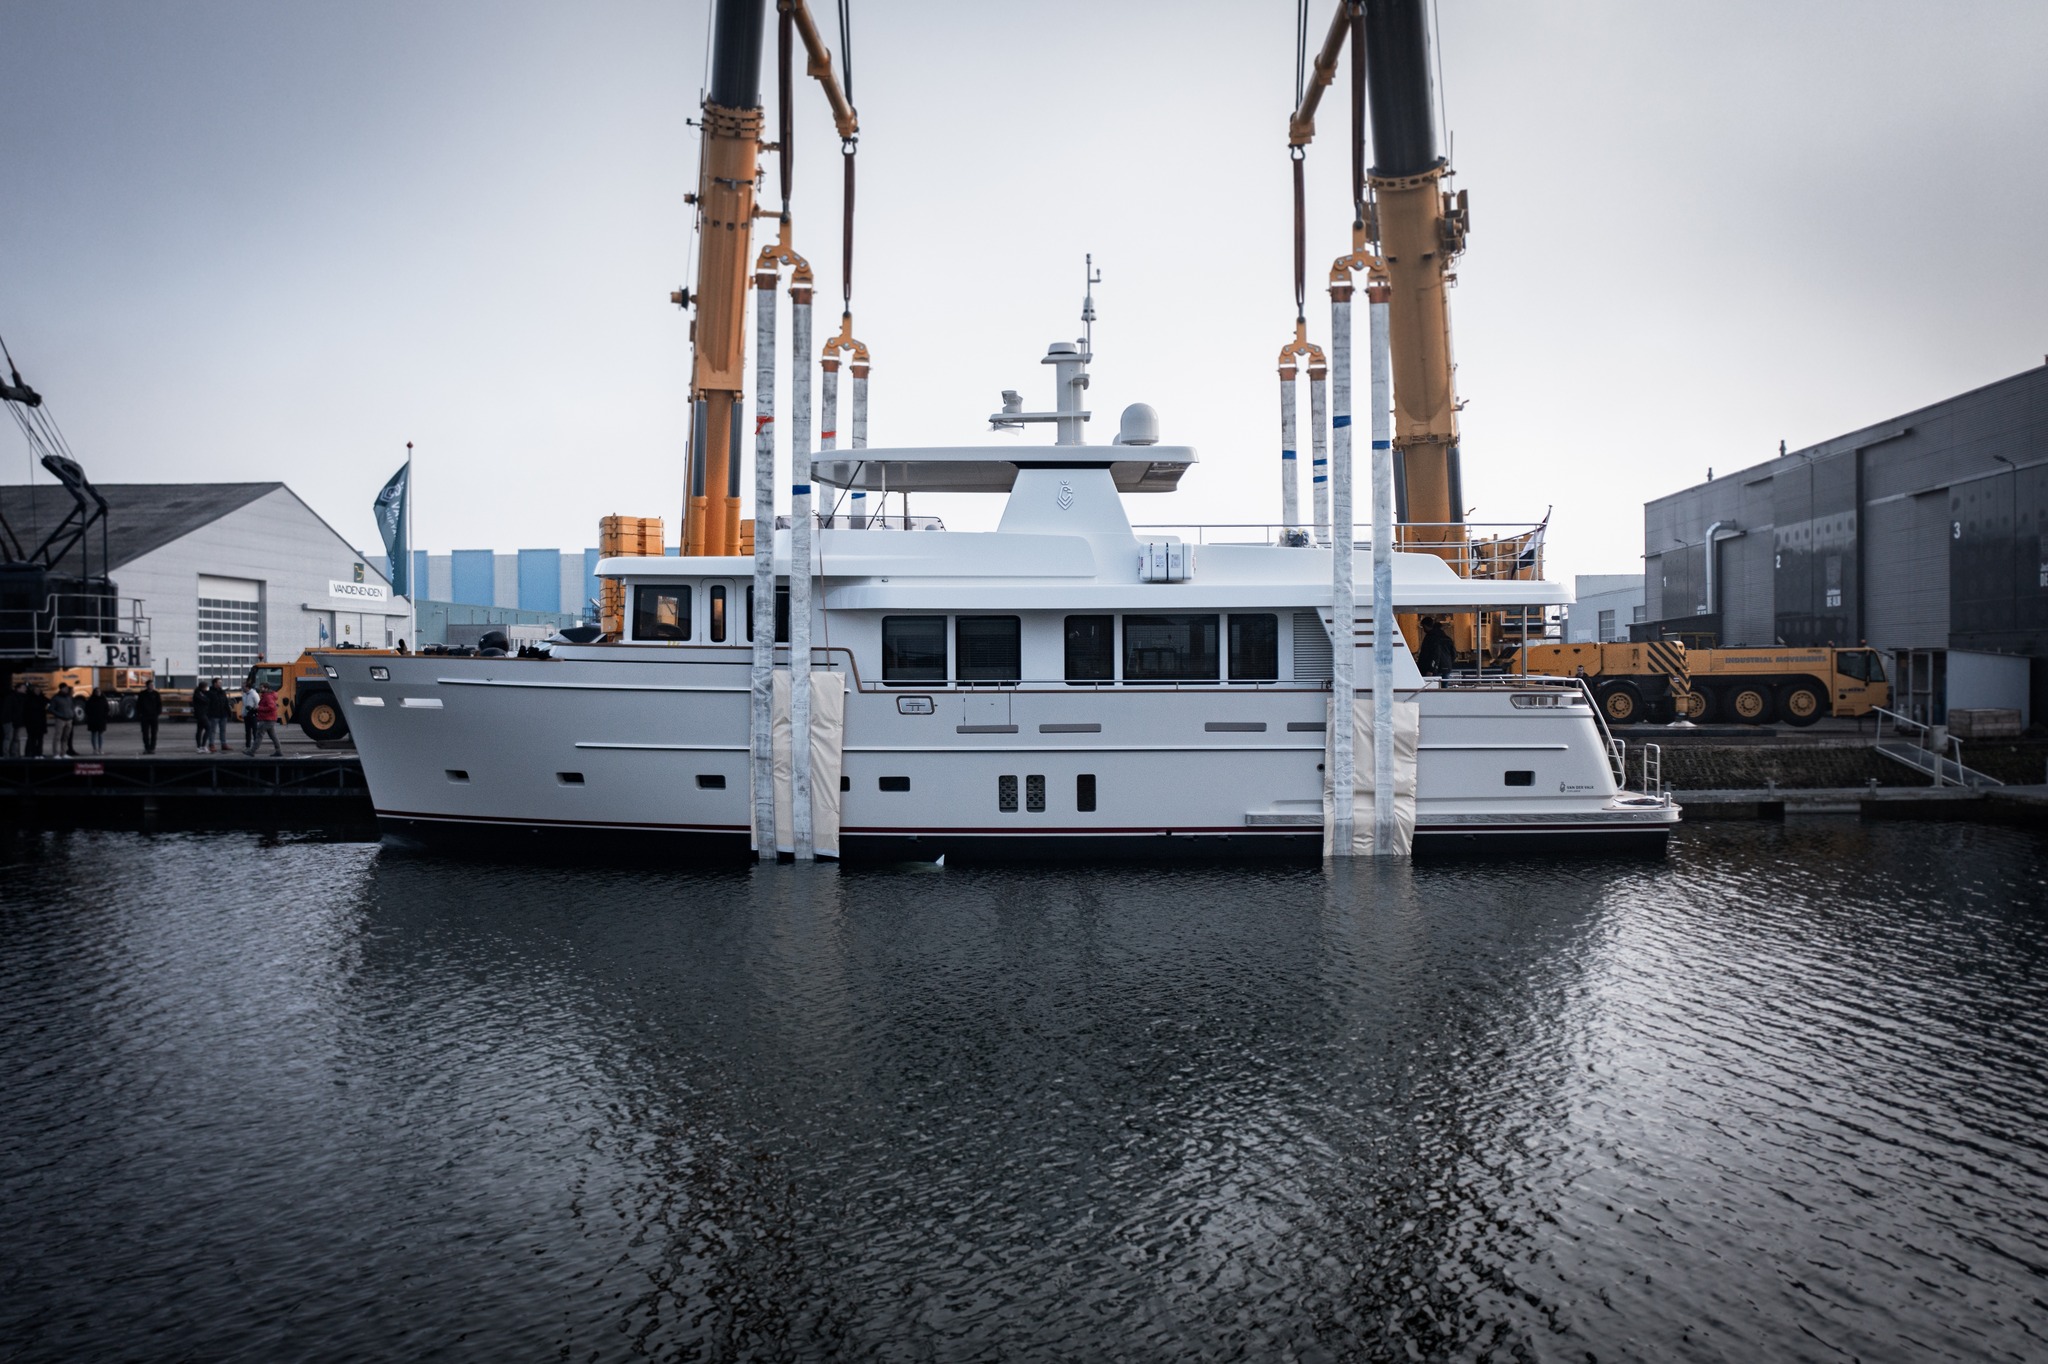 BRAND NEW Dutch-Built STEEL Liveboard Explorer Yacht!